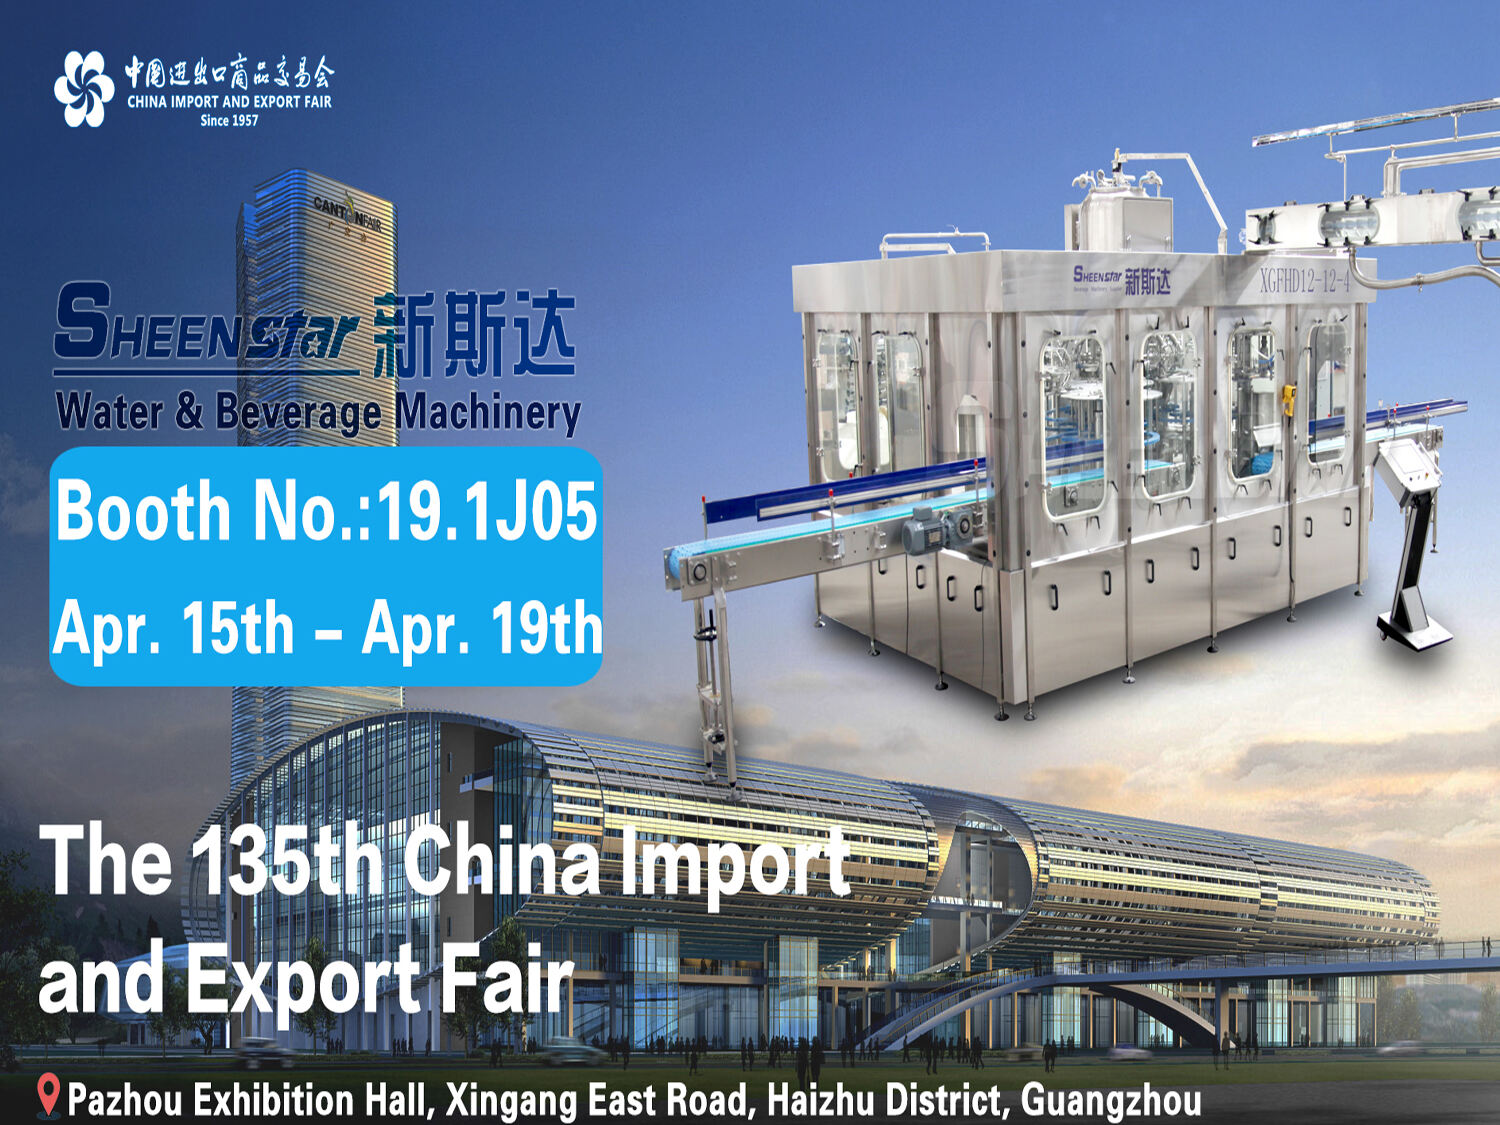 Se reunirá con SHEENSTAR en la 135ª Feria de Importación y Exportación de China